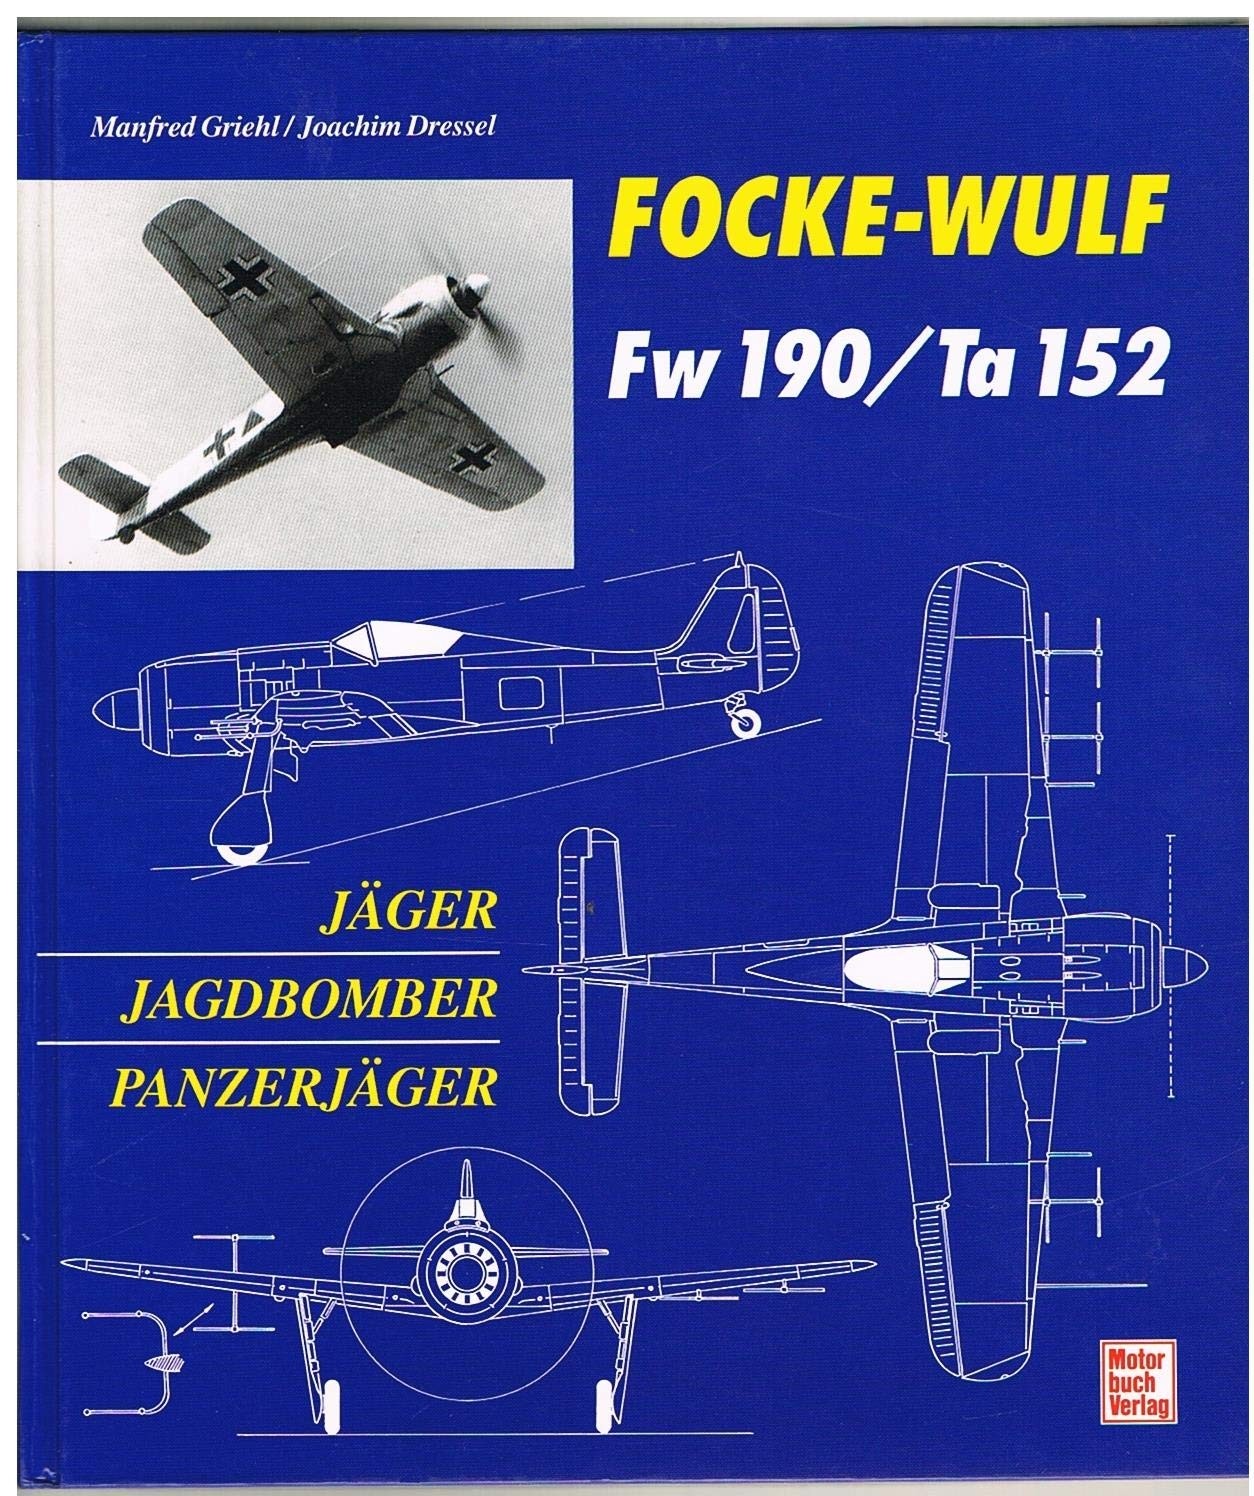 Focke-Wulf Fw190, Ta152 Jäger, Jagdbomber, Panzerjäger